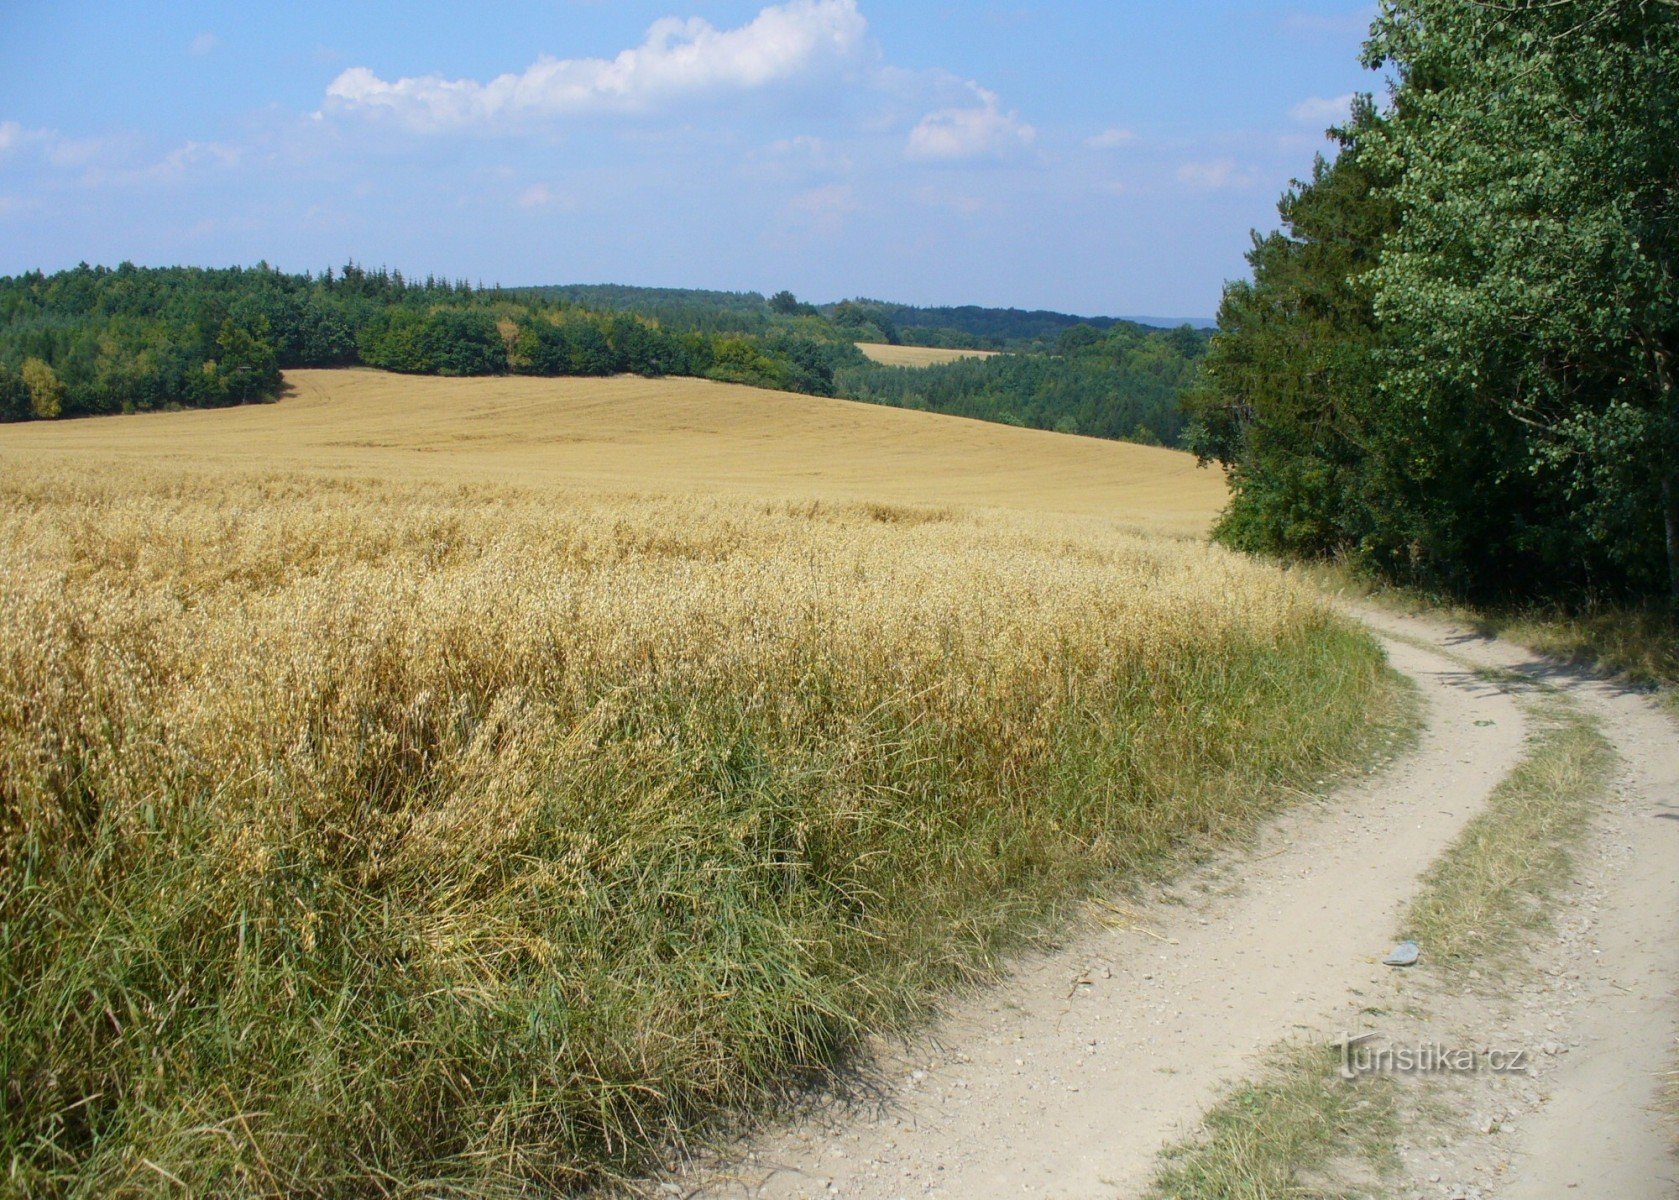 Estrada de terra de Maršov